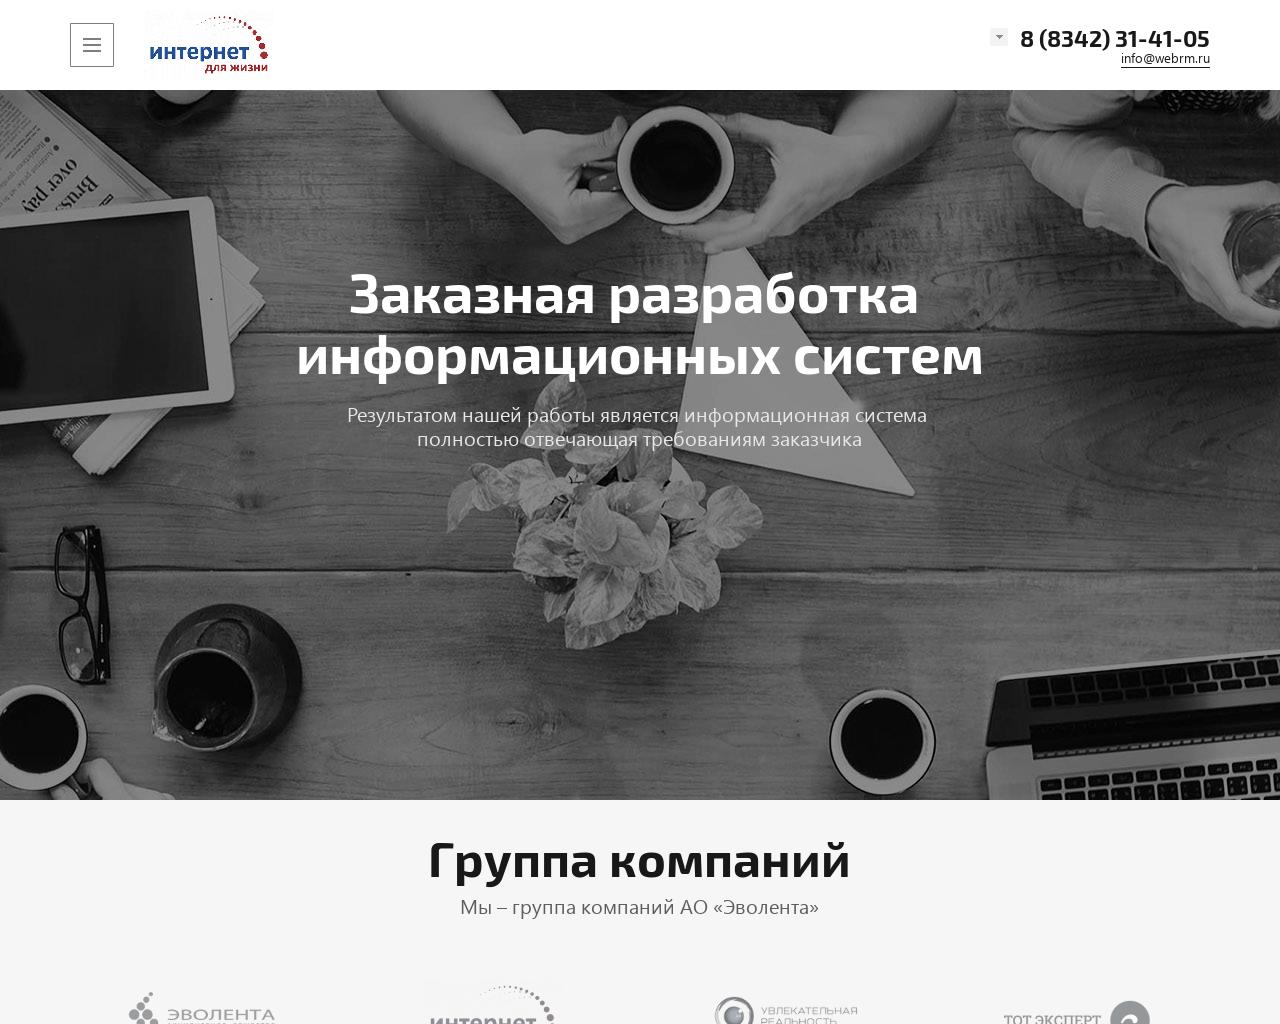 Изображение сайта webrm.ru в разрешении 1280x1024